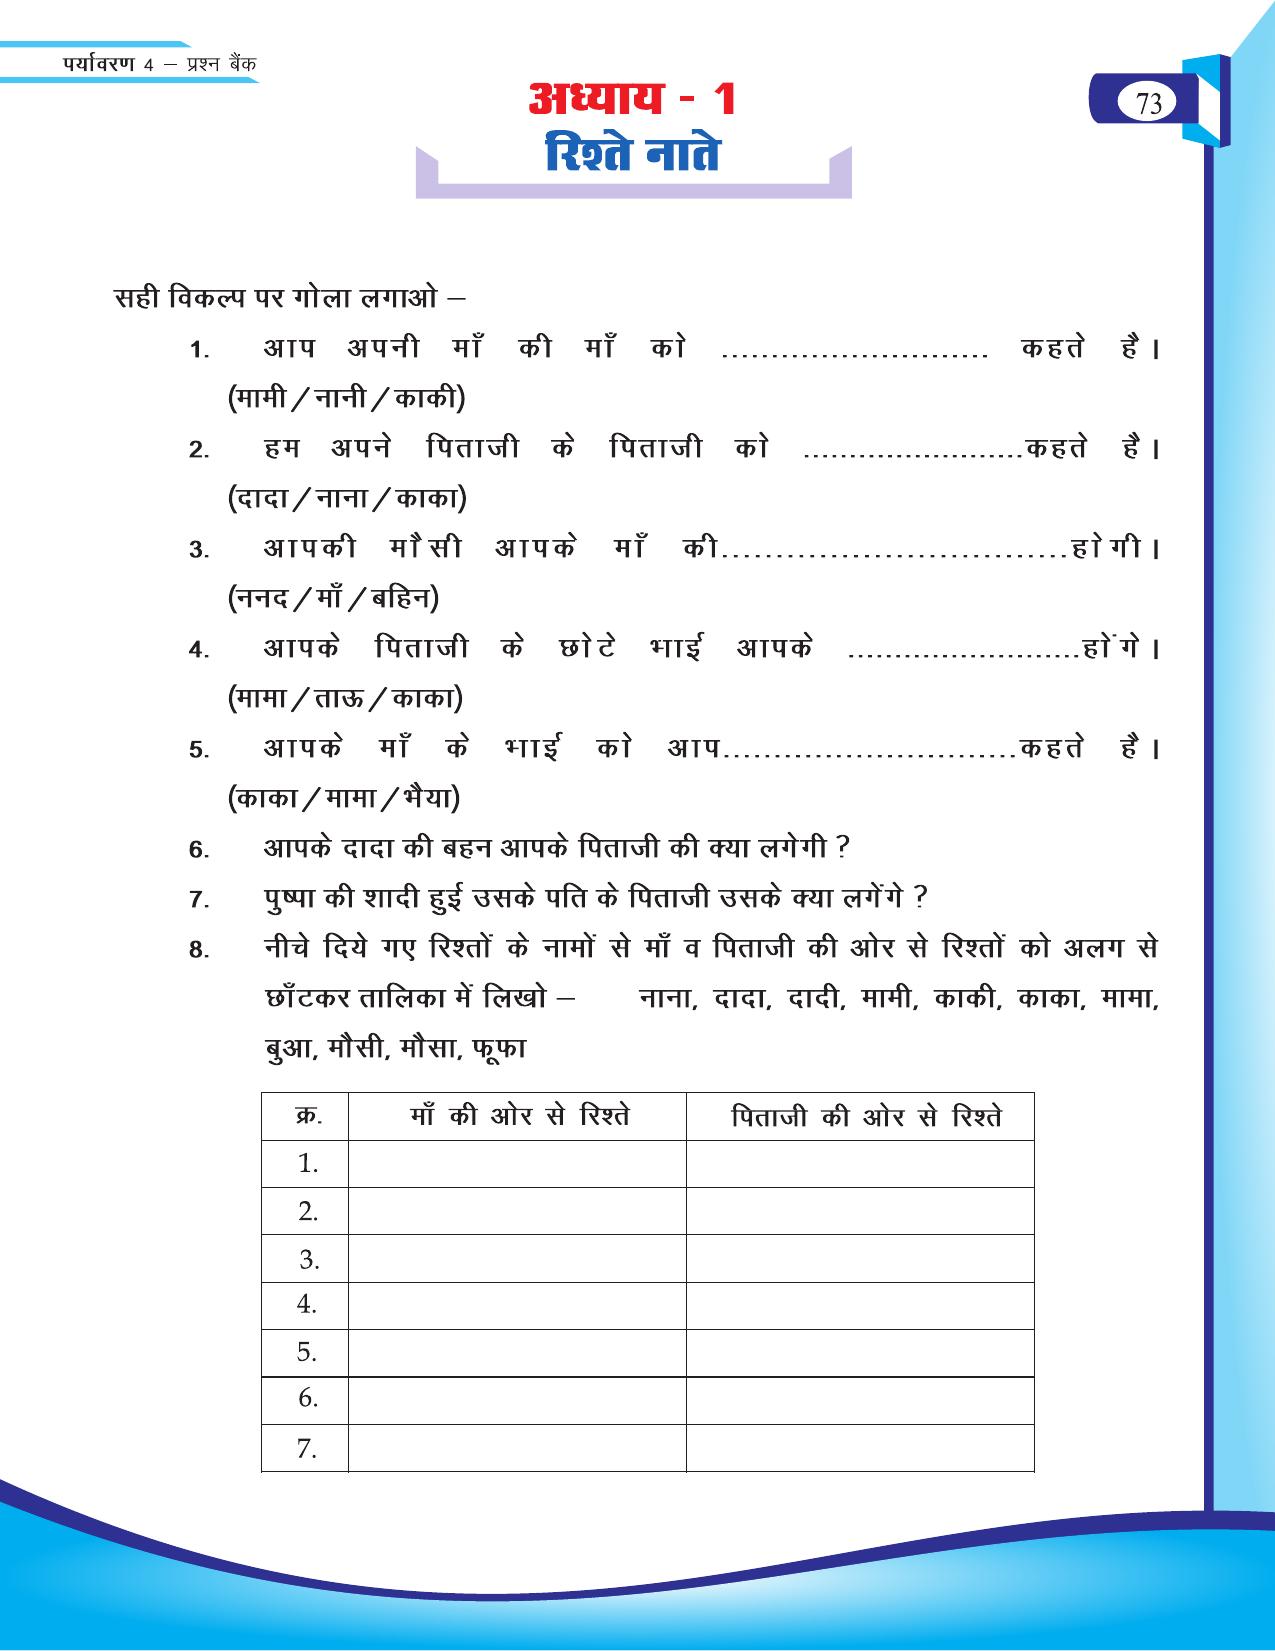 Chhattisgarh Board Class 4 EVS Question Bank 2015-16 - Page 2